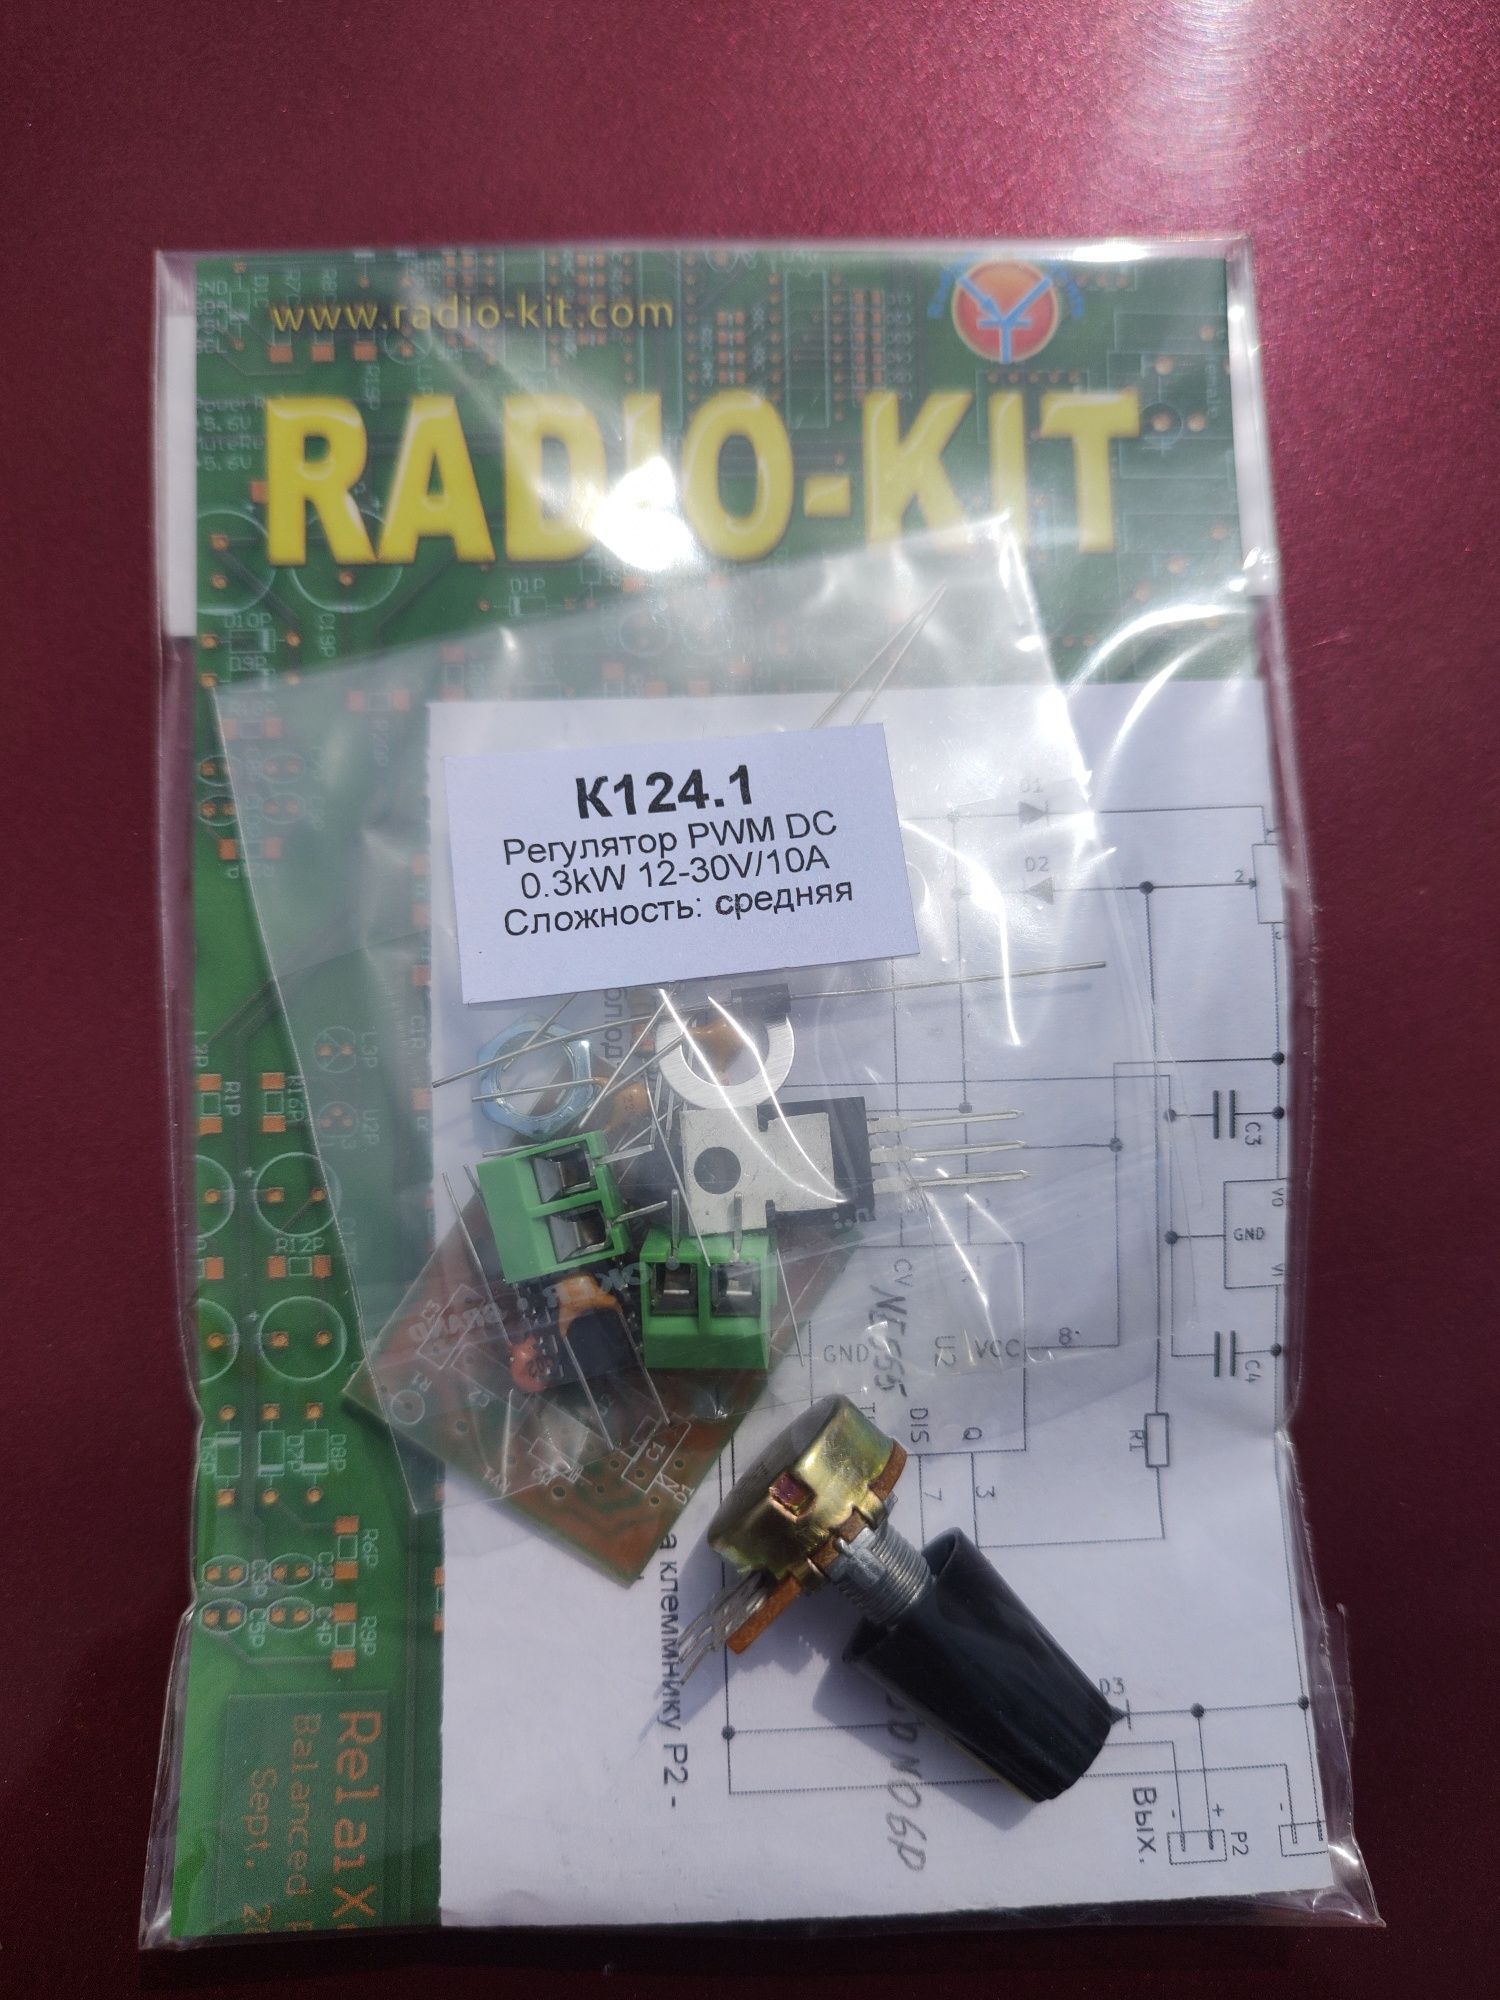 Радиоконструктор регулятор PWM 0.3 KW К124.1